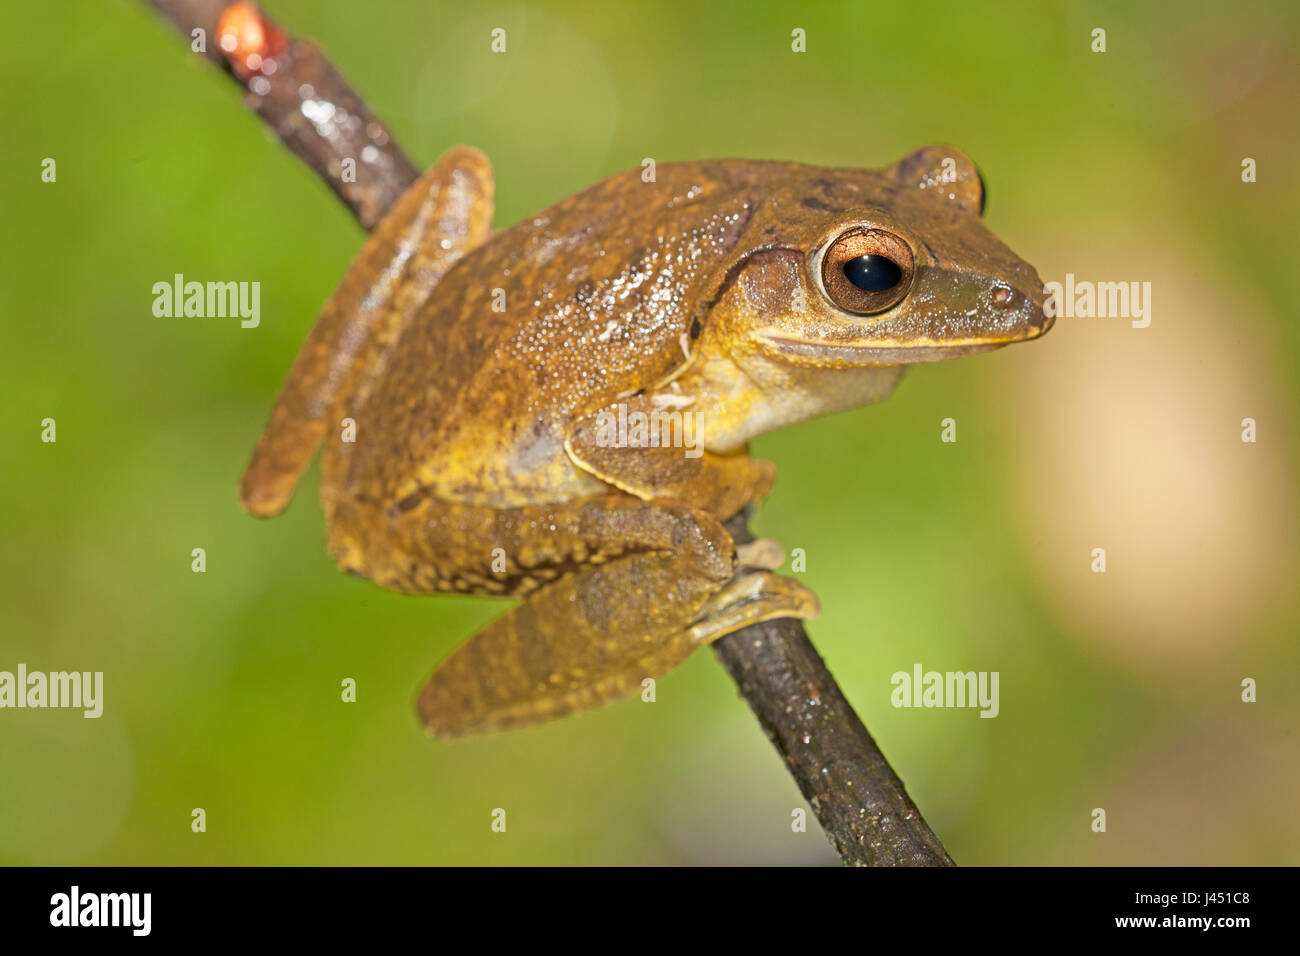 common treefrog on twig Stock Photo